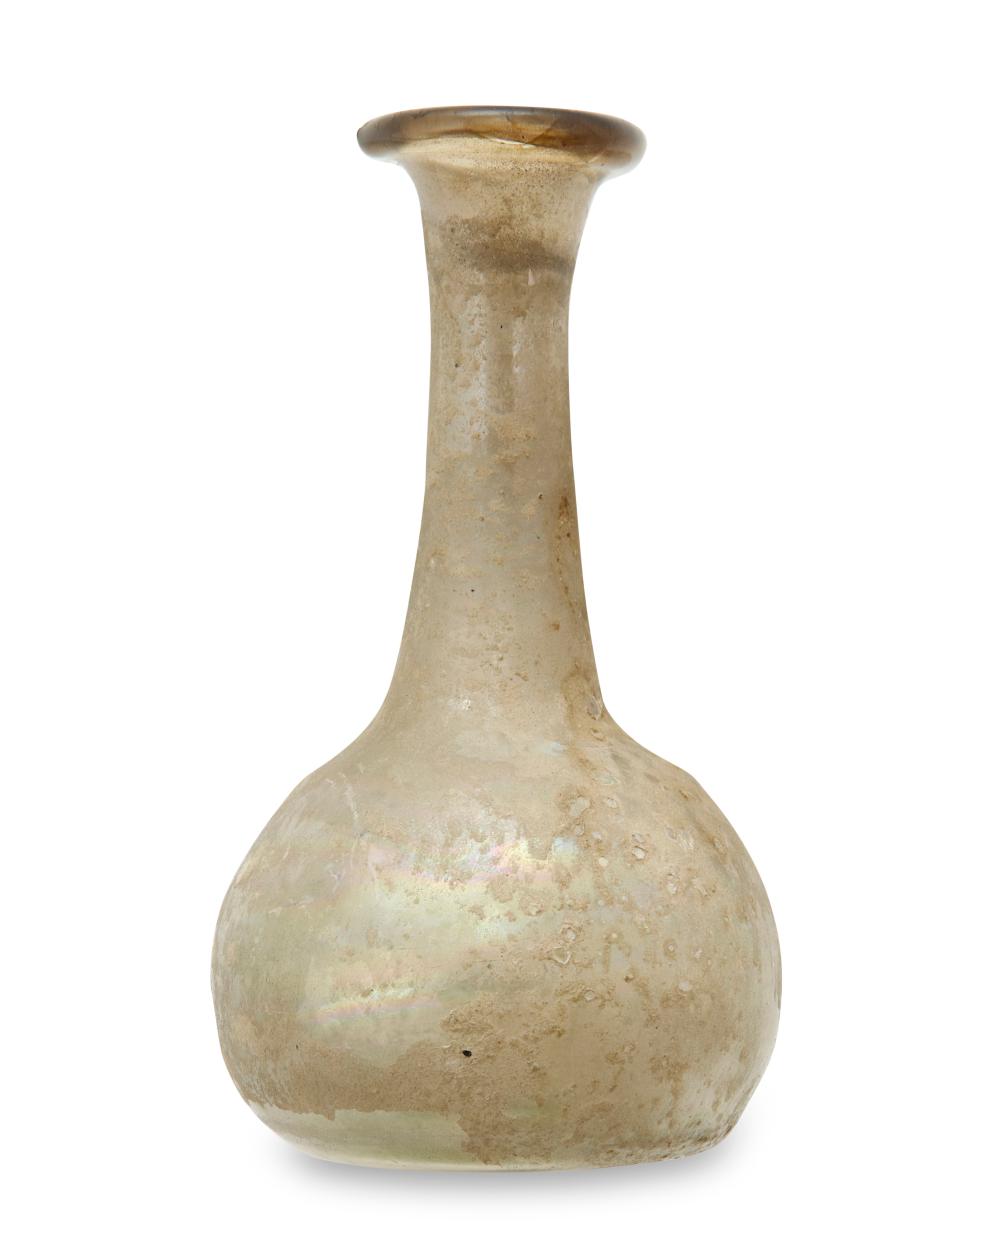 A ROMAN STYLE GLASS BUD VASEA Roman style 2ee96c